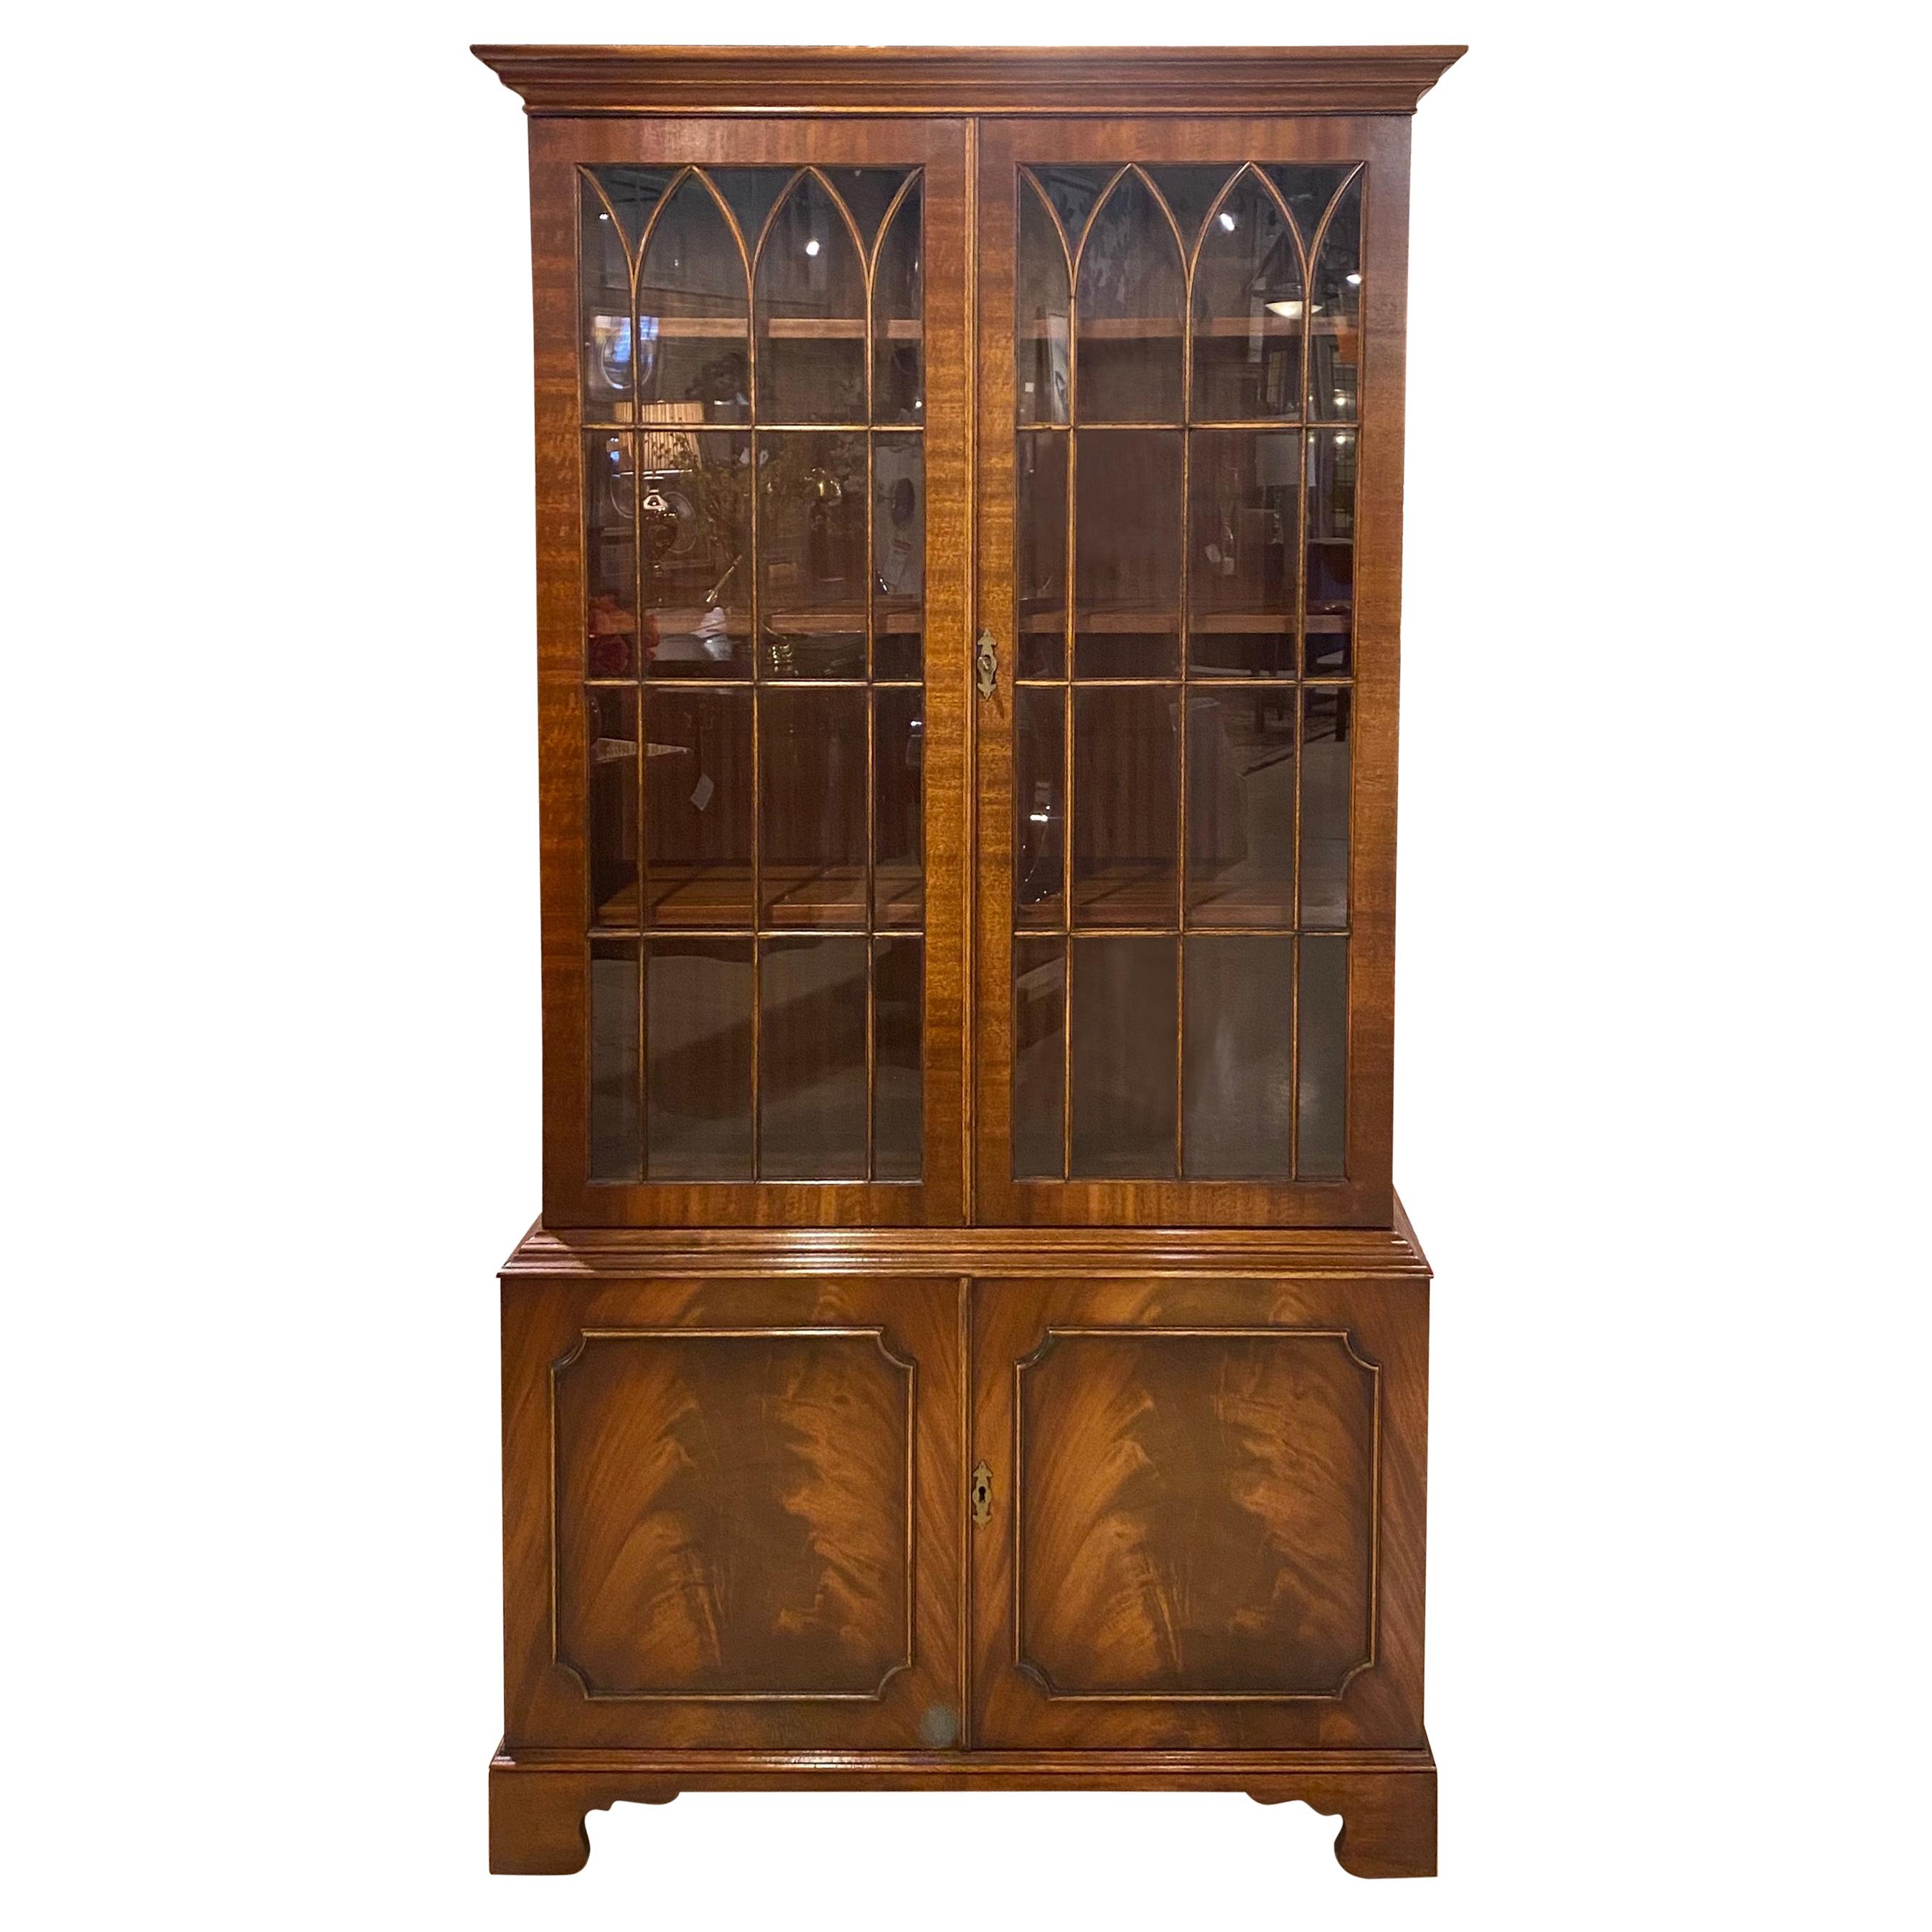 Bookcase 18th Century Style Mahogany English, Hand Glazed Doors